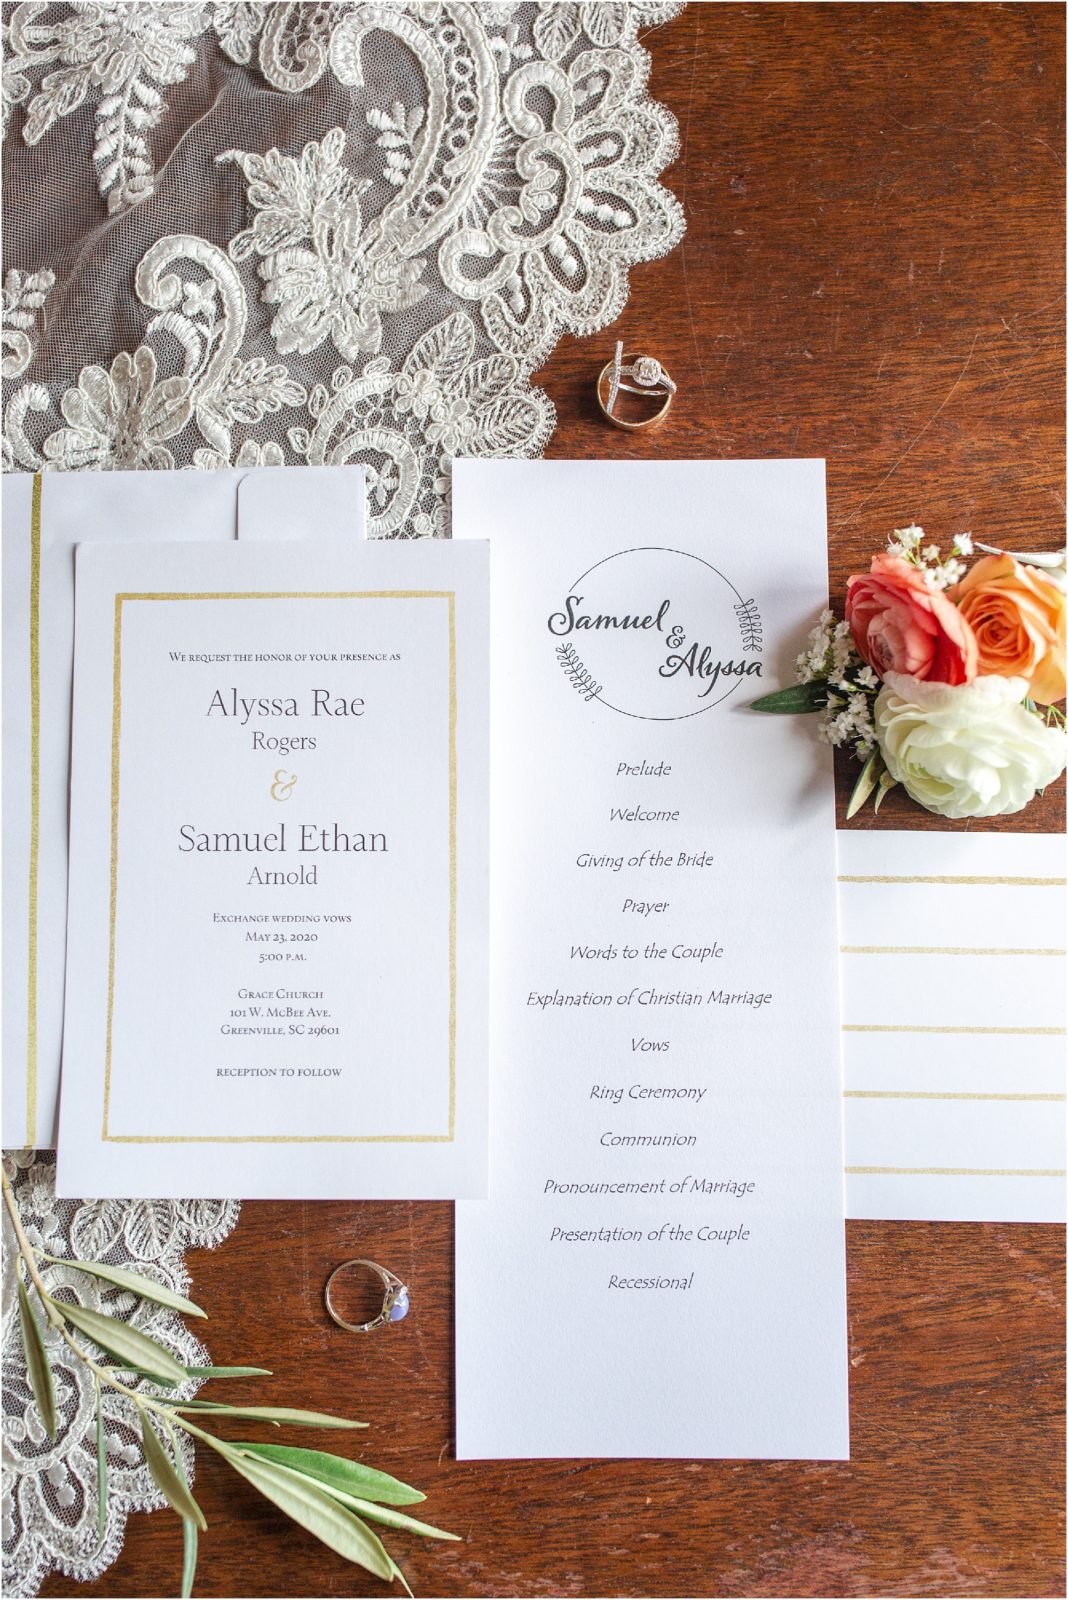 Wedding invitations on table